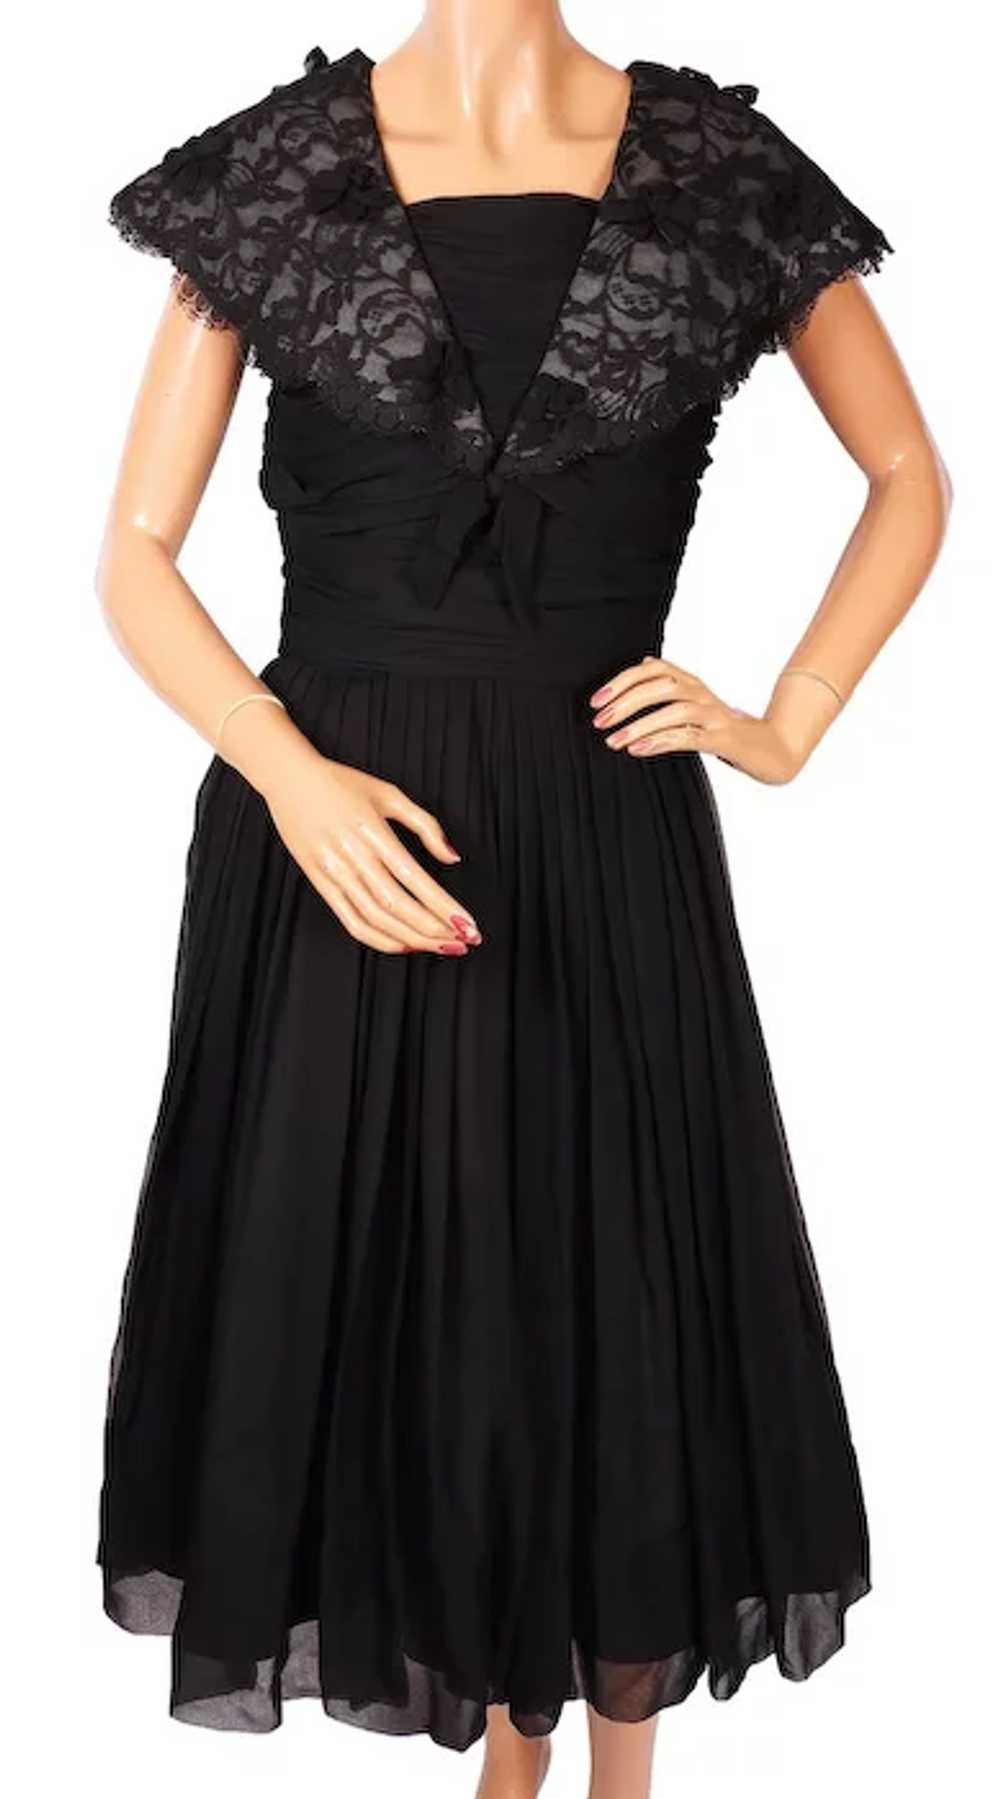 1960s Black Chiffon & Lace Dress - S - image 8